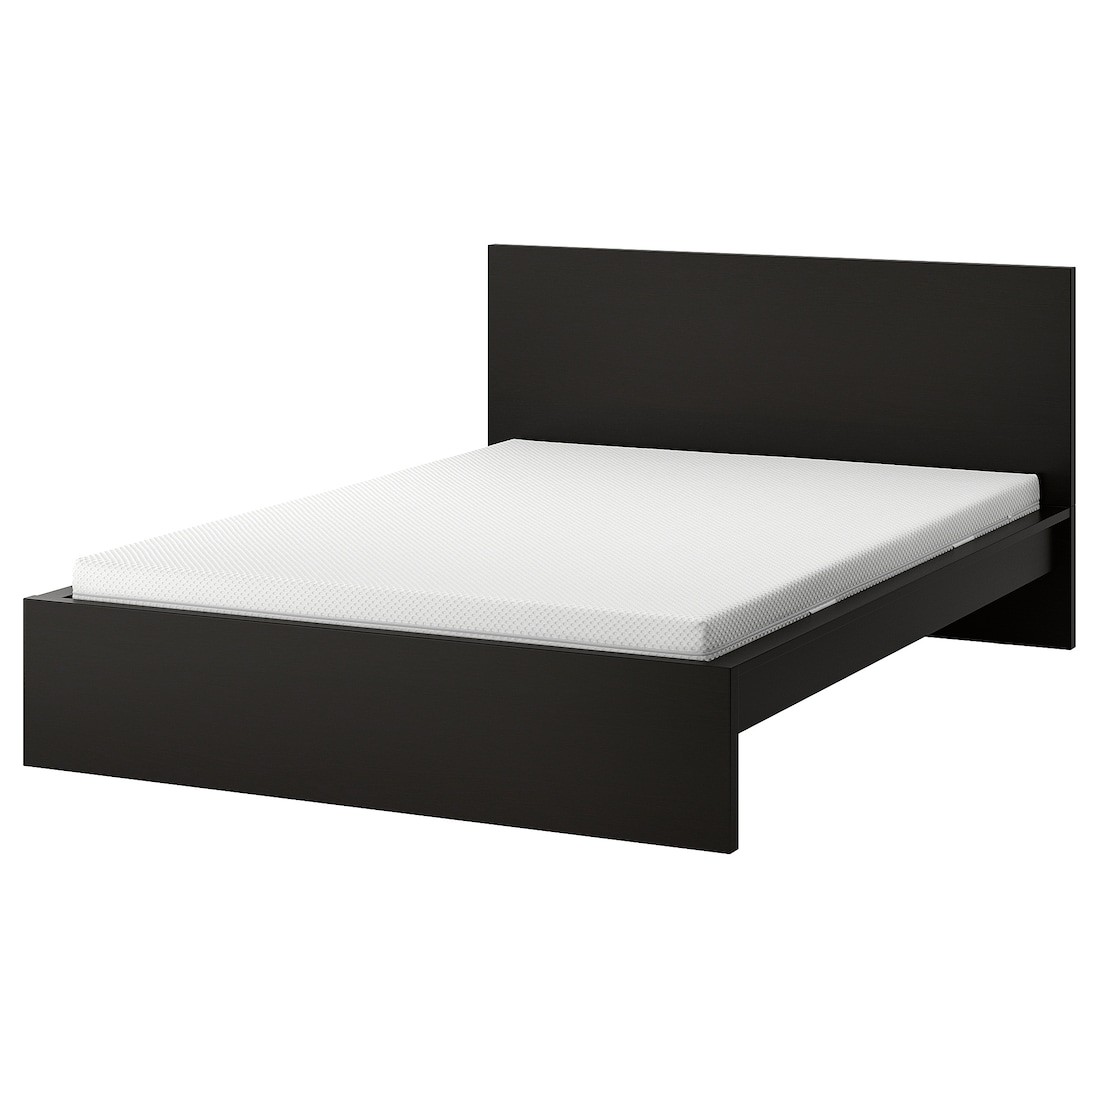 MALM Кровать с матрасом, черно-коричневый / Åbygda твердый, 160x200 см